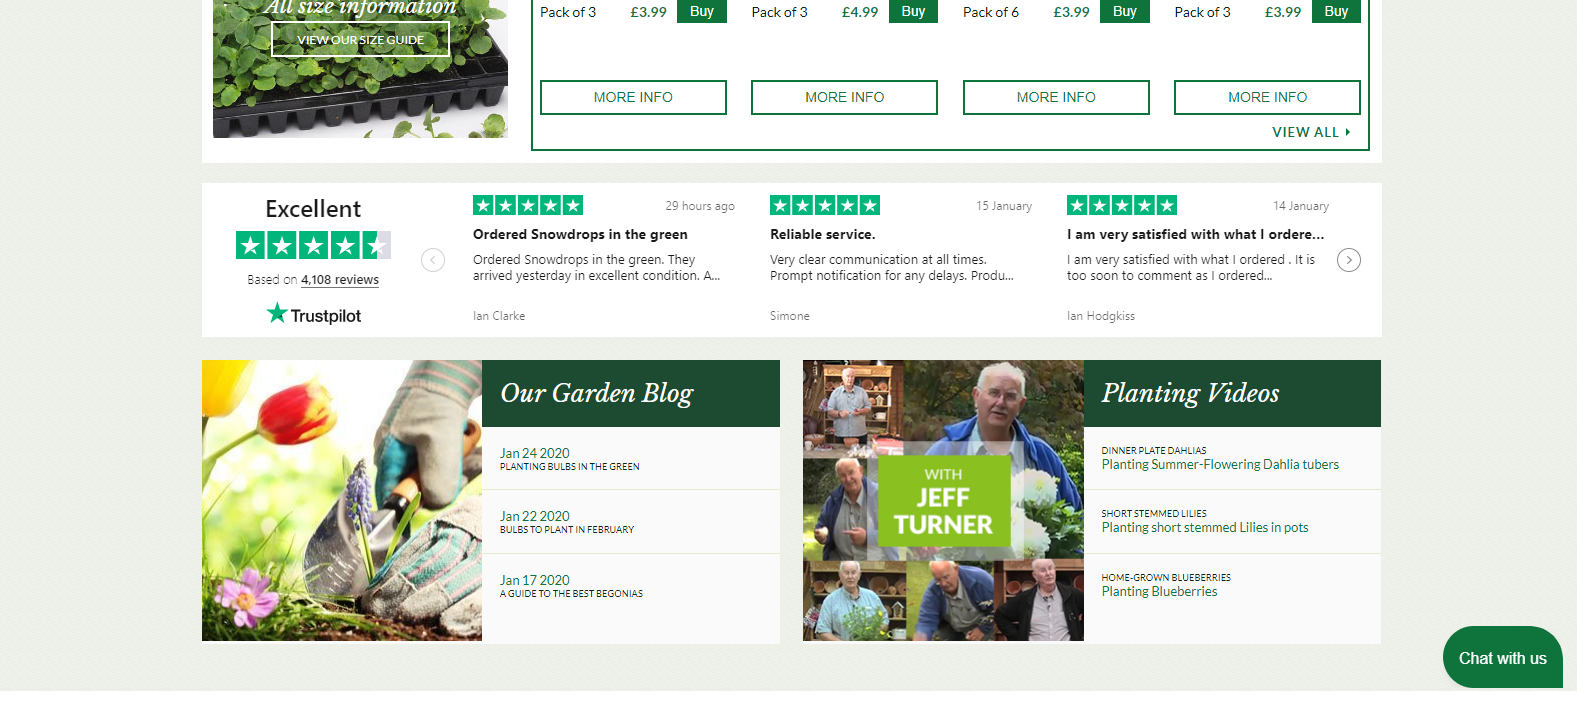 Garden Centre Customer Reviews